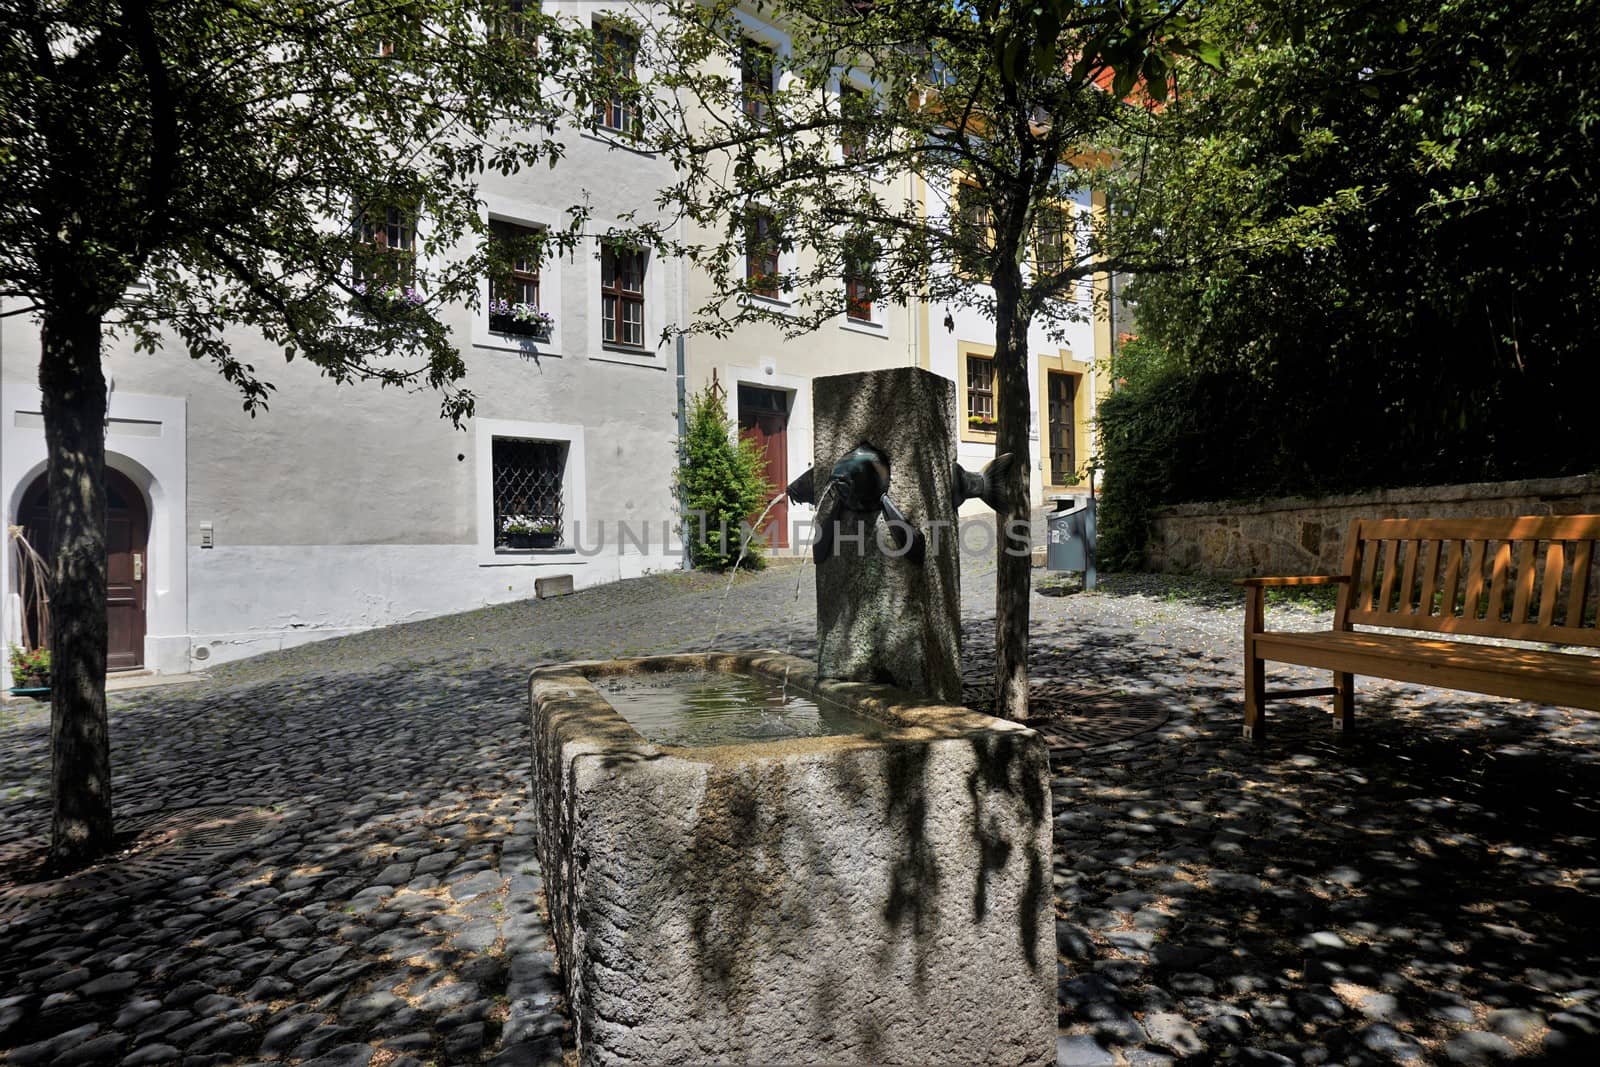 Karpfenbrunnen on a small square in the Karpfengrund street, Goerlitz